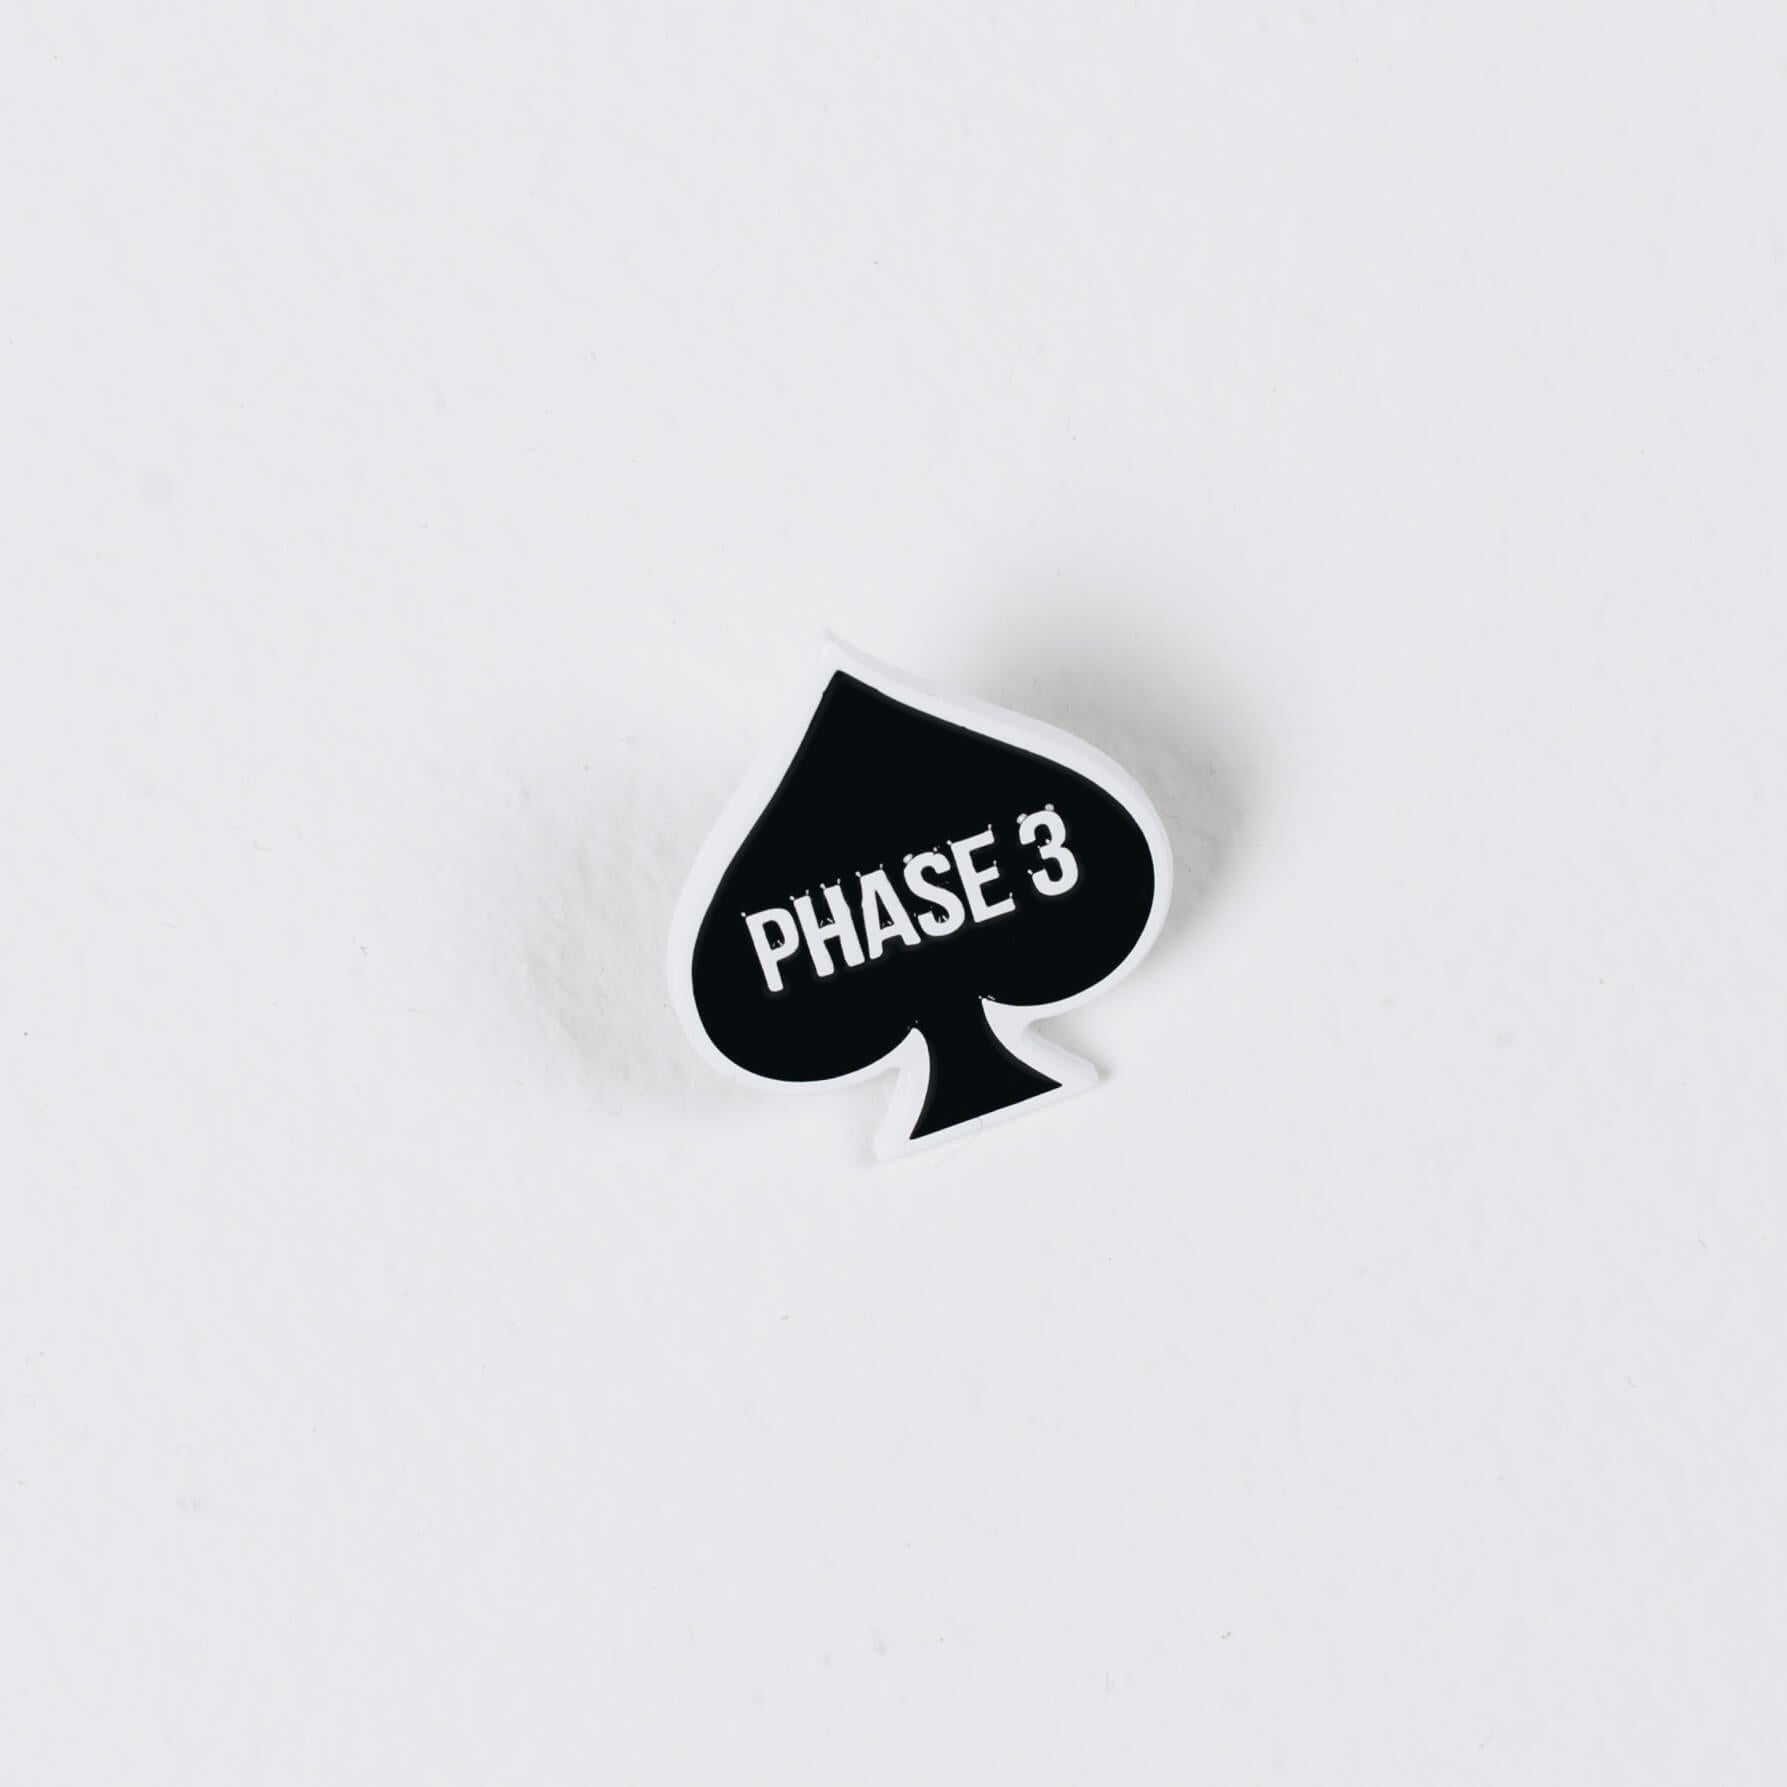 Phase 3 Pin